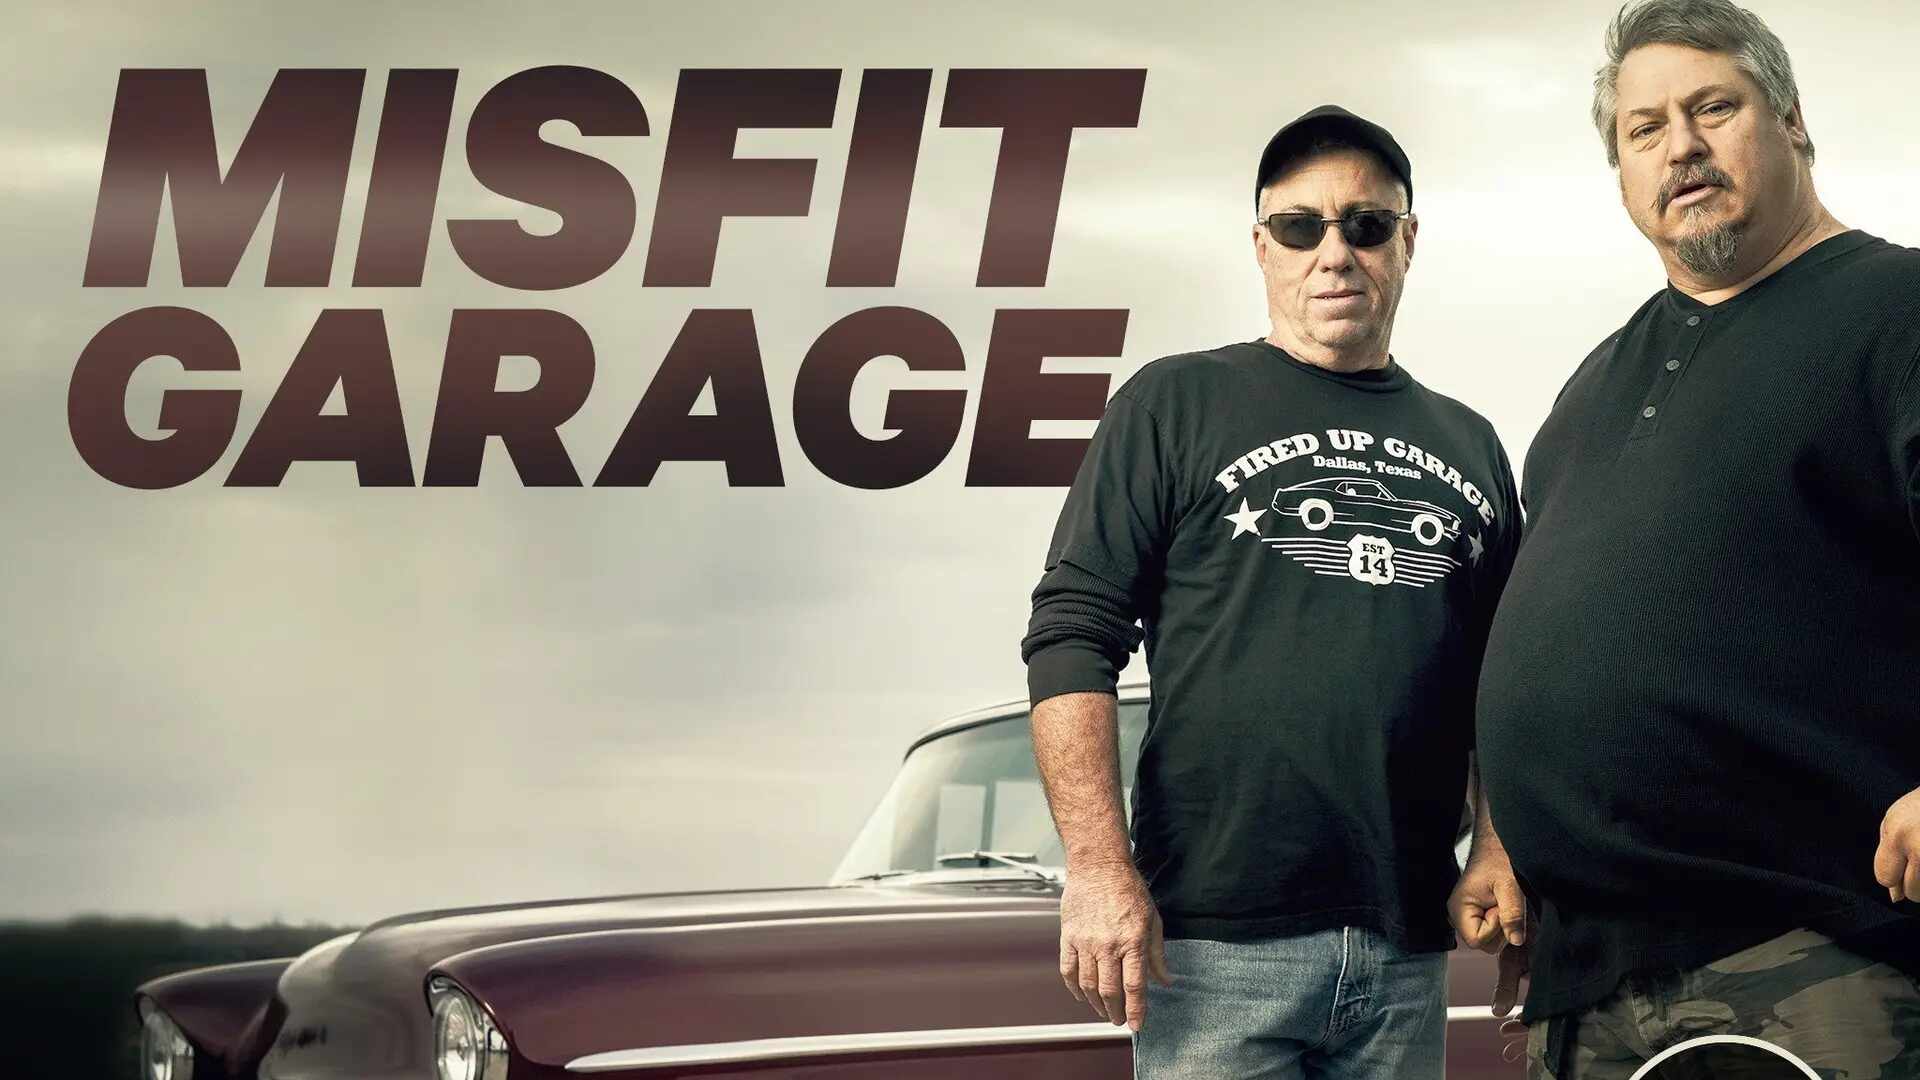 Image of Misfit Garage